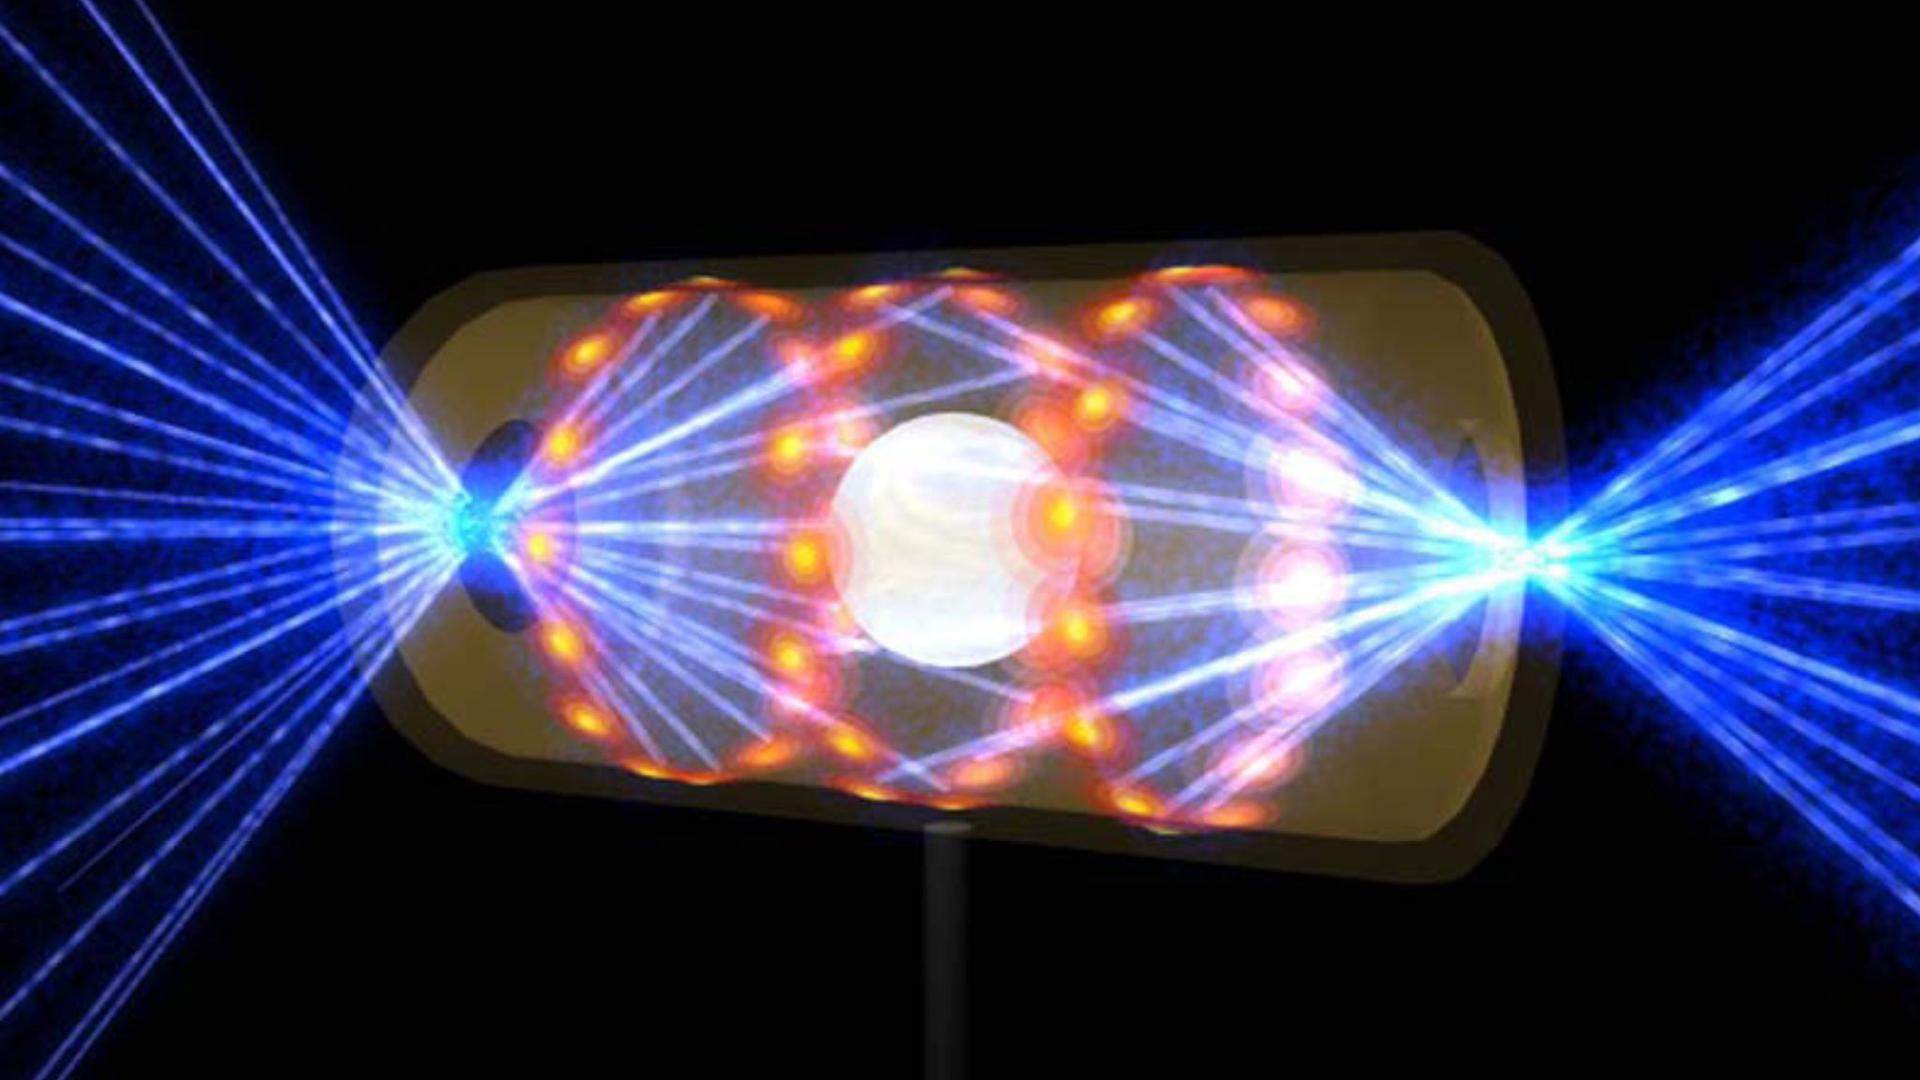 Diese Illustration zeigt ein NIF-Target-Pellet in einer Hohlraumkapsel mit Laserstrahlen, die durch Öffnungen an beiden Enden eintreten. Die Strahlen komprimieren und erhitzen das Target auf die Bedingungen, die für die Kernfusion erforderlich sind.